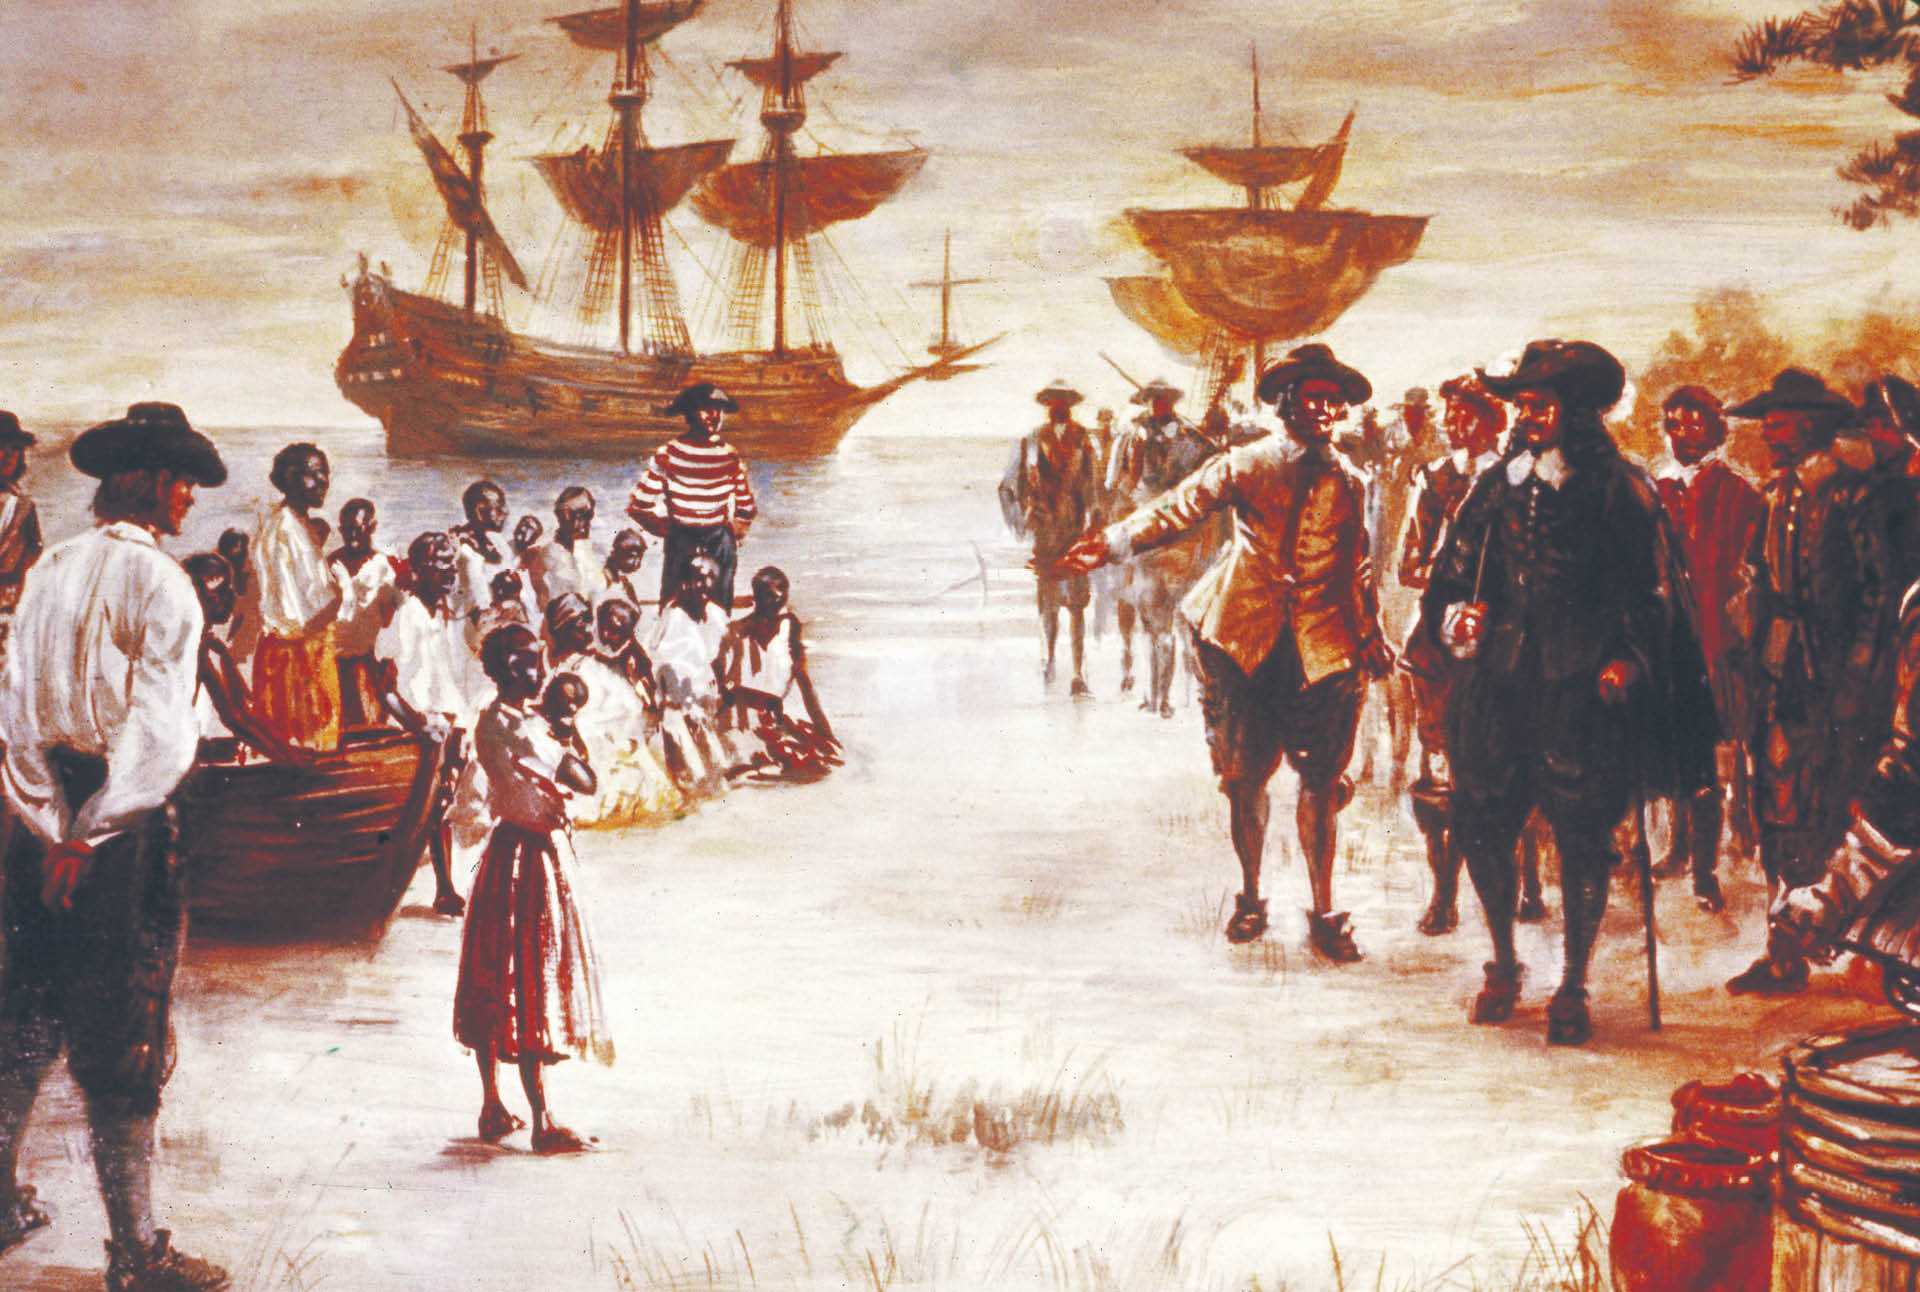 Ilustracja przedstawiająca przybycie holenderskiego statku z niewolnikami do Jamestown w Wirginii w 1619 r.